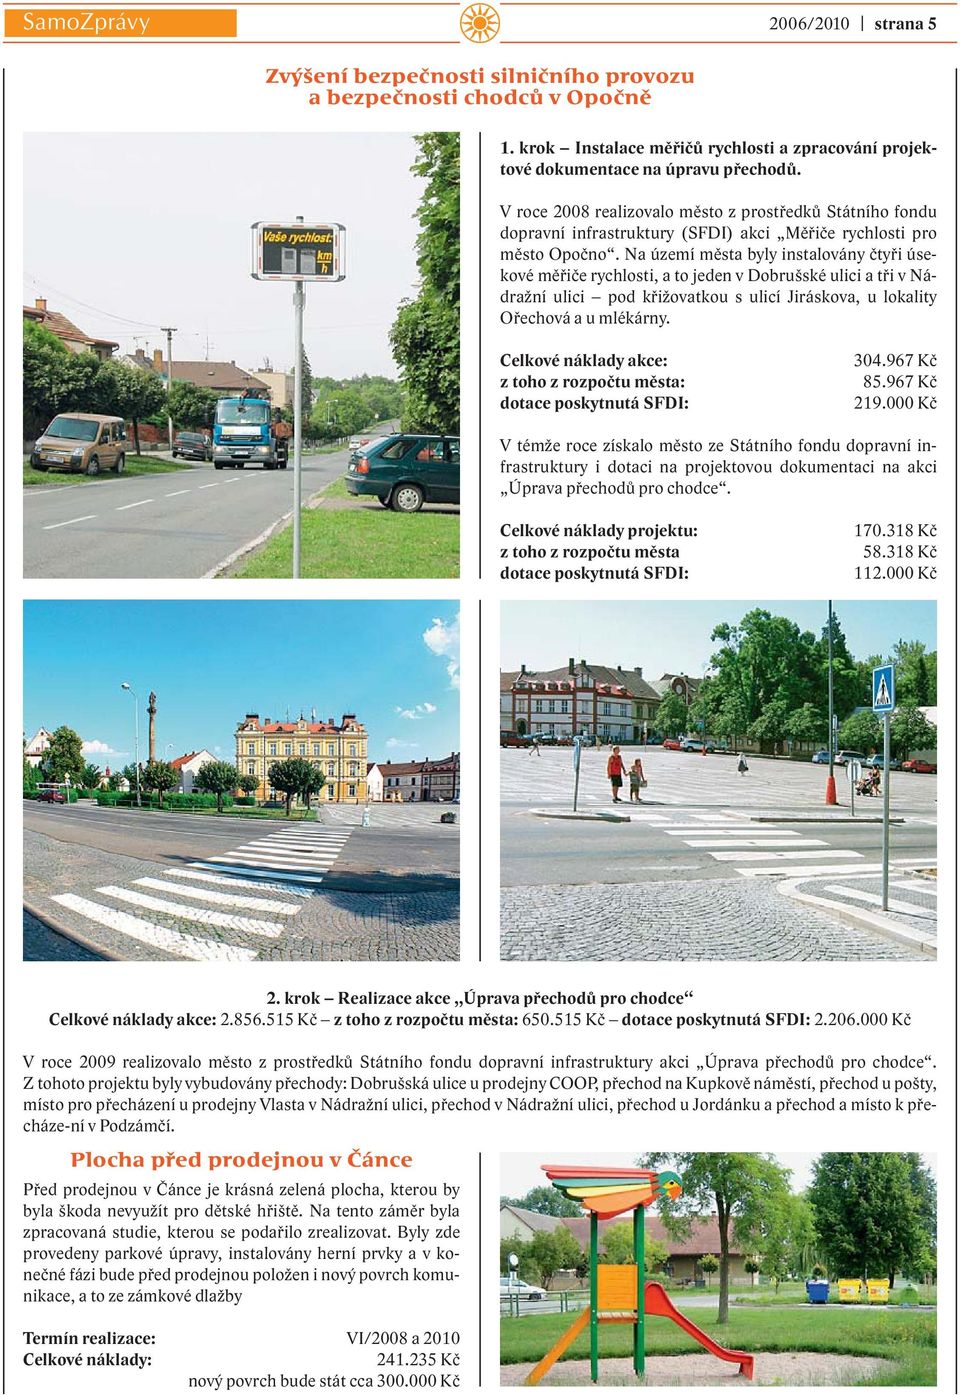 Na území města byly instalovány čtyři úsekové měřiče rychlosti, a to jeden v Dobrušské ulici a tři v Nádražní ulici pod křižovatkou s ulicí Jiráskova, u lokality Ořechová a u mlékárny.